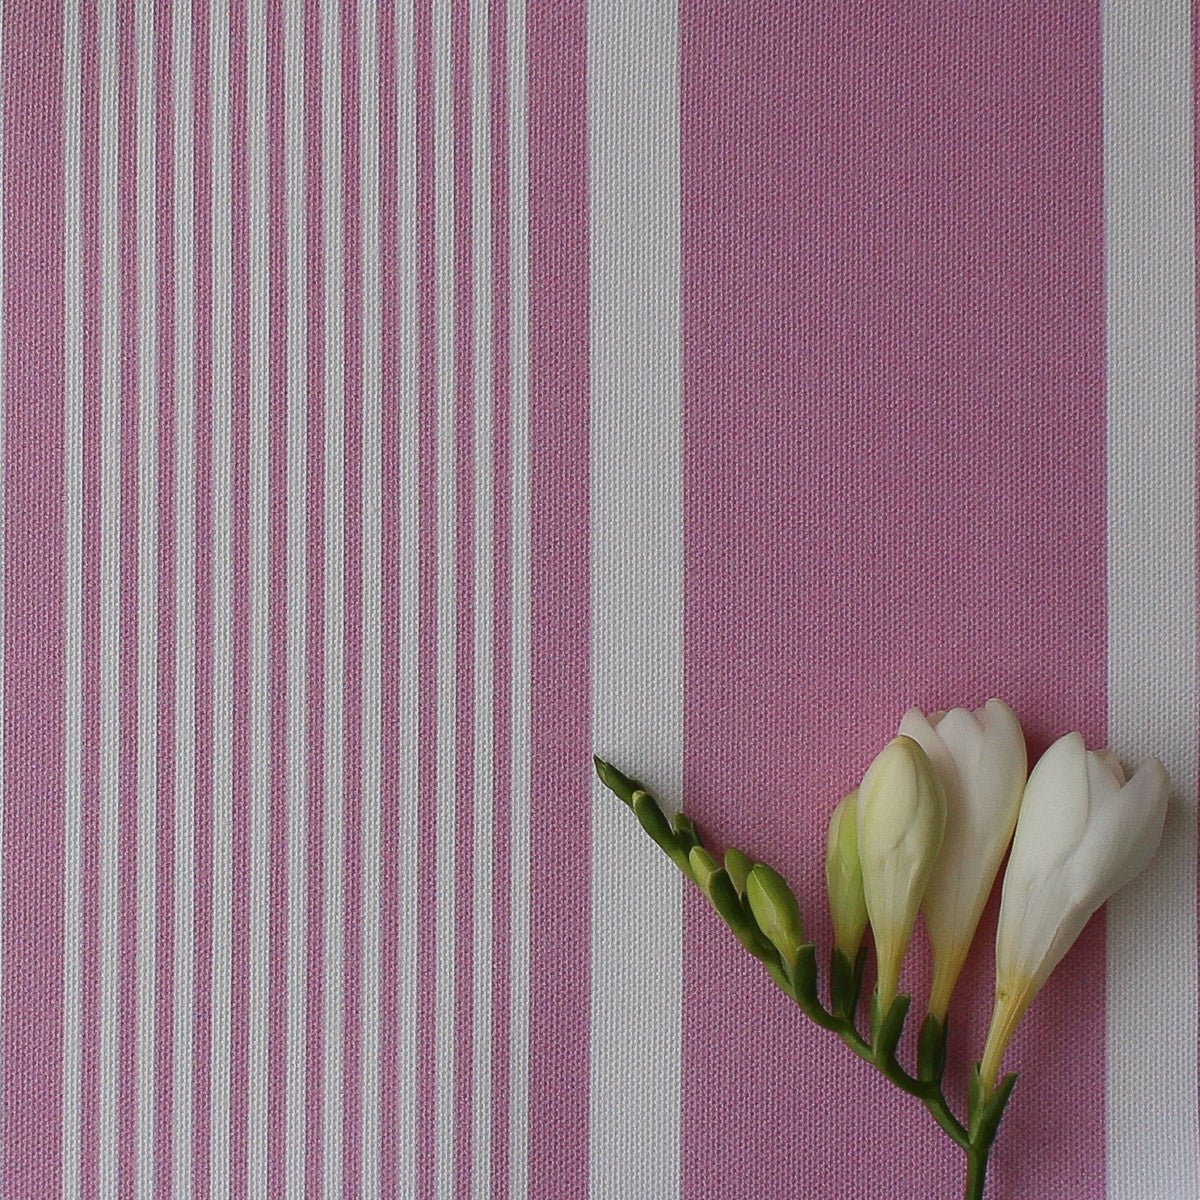 Deckchair Stripe Fabric - Tickled Pink - Hydrangea Lane Home